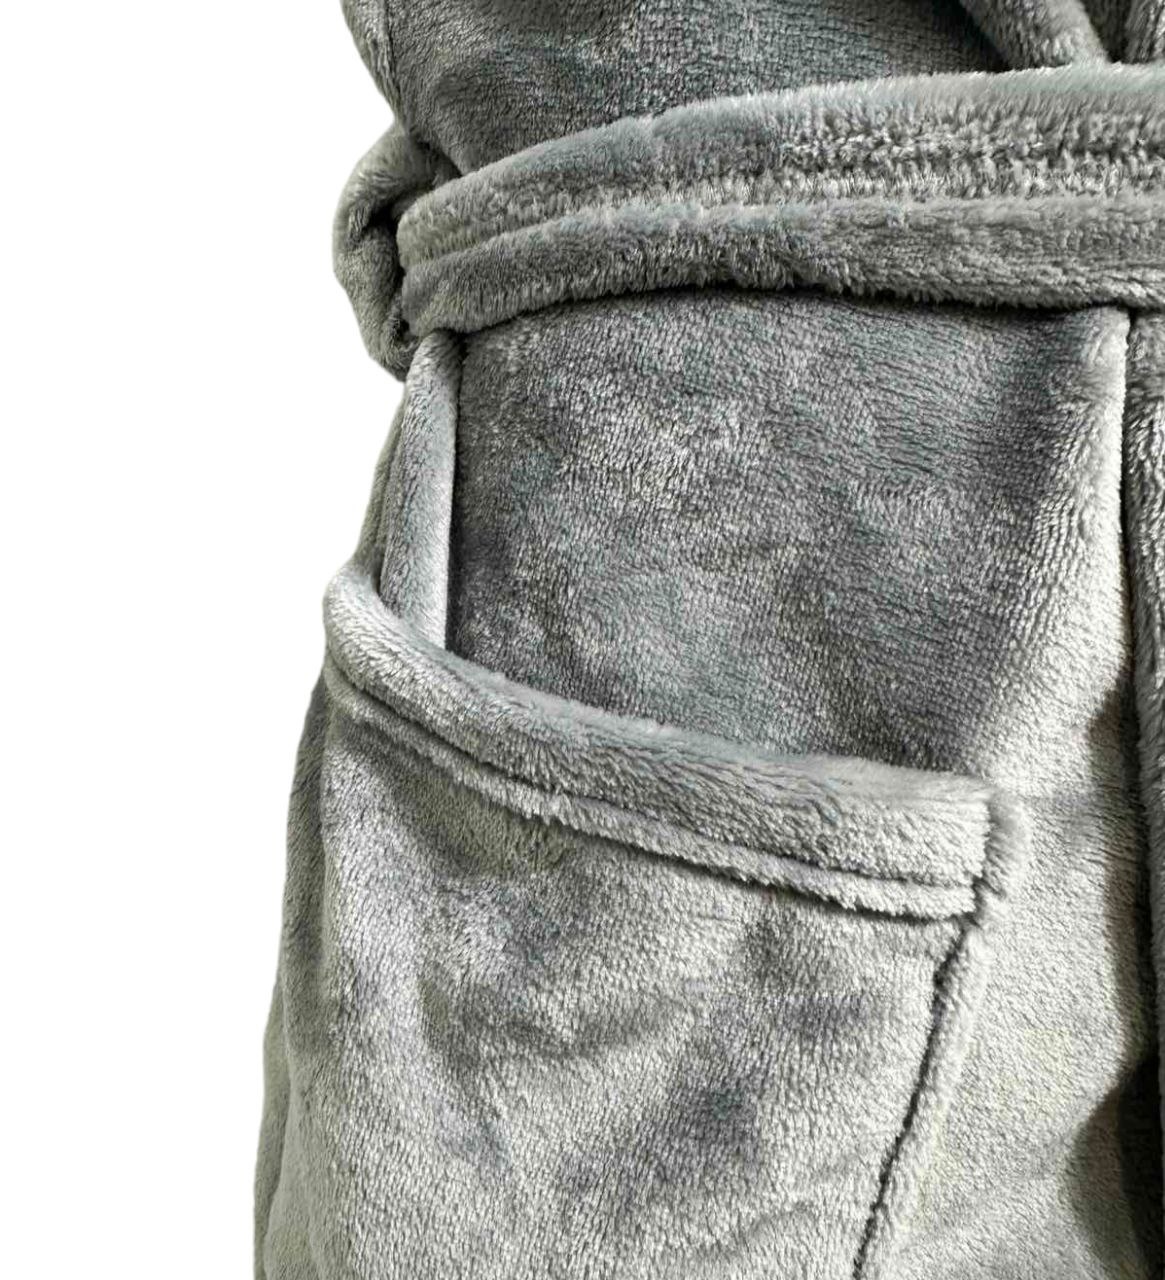 Халат чоловічий з капюшоном кольорова рвана махра сірого кольору , Сірий, 48-50